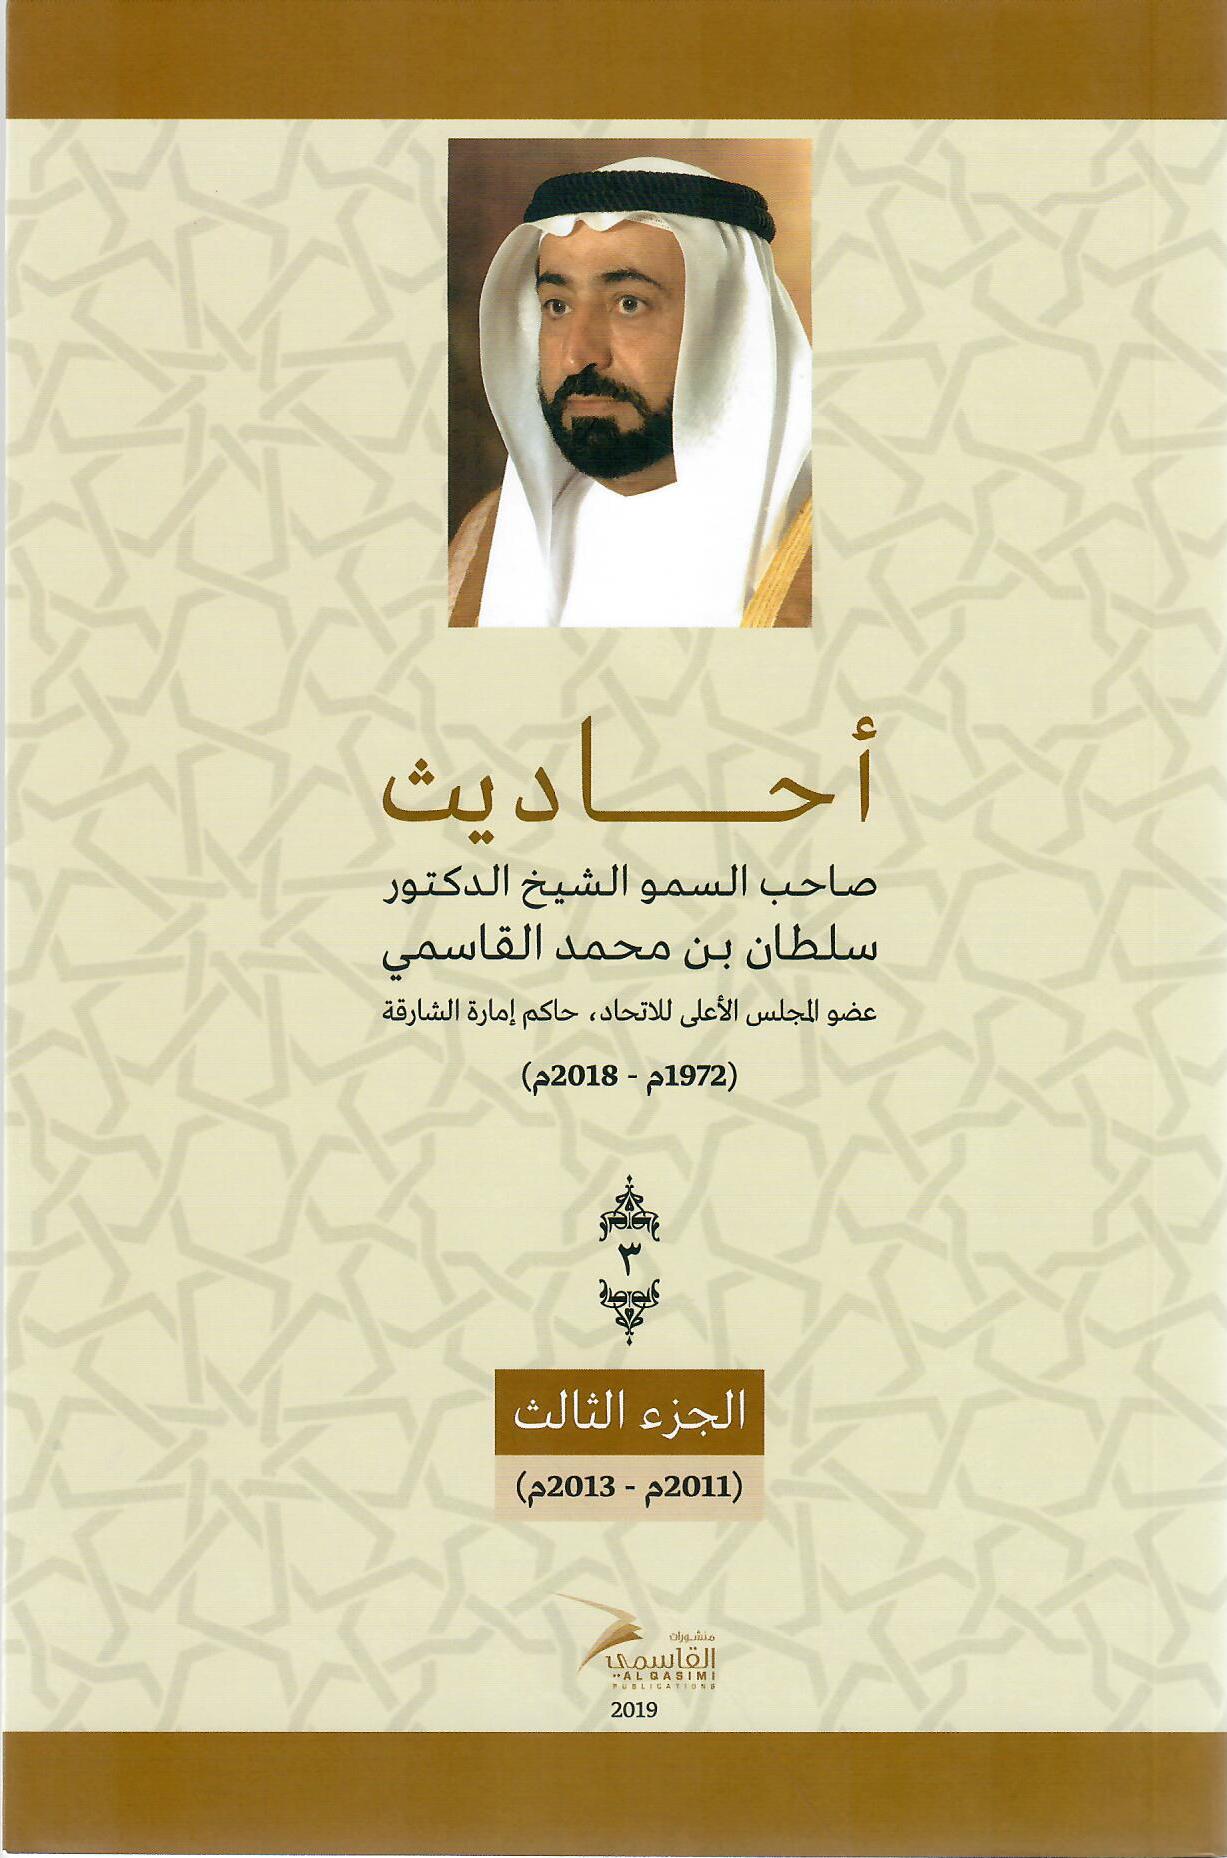 أحاديث صاحب السمو الشيخ الدكتور سلطان بن محمد القاسمي عضو المجلس الأعلى حاكم الشارقة ( 1972م - 2018م) الجزء الرابع